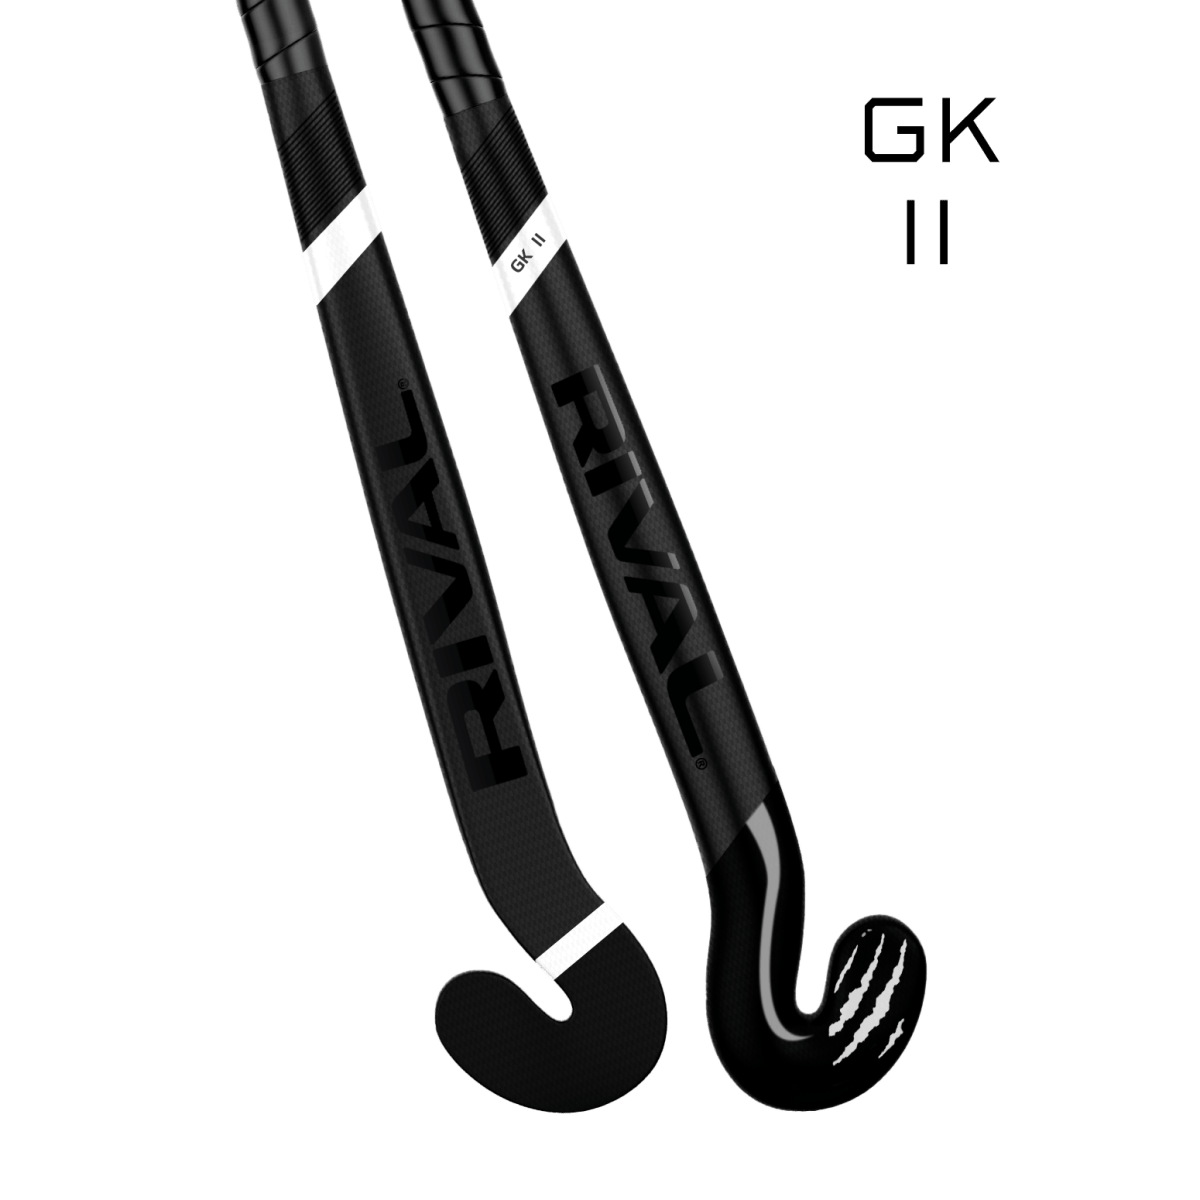 Rival GK II - field hockey